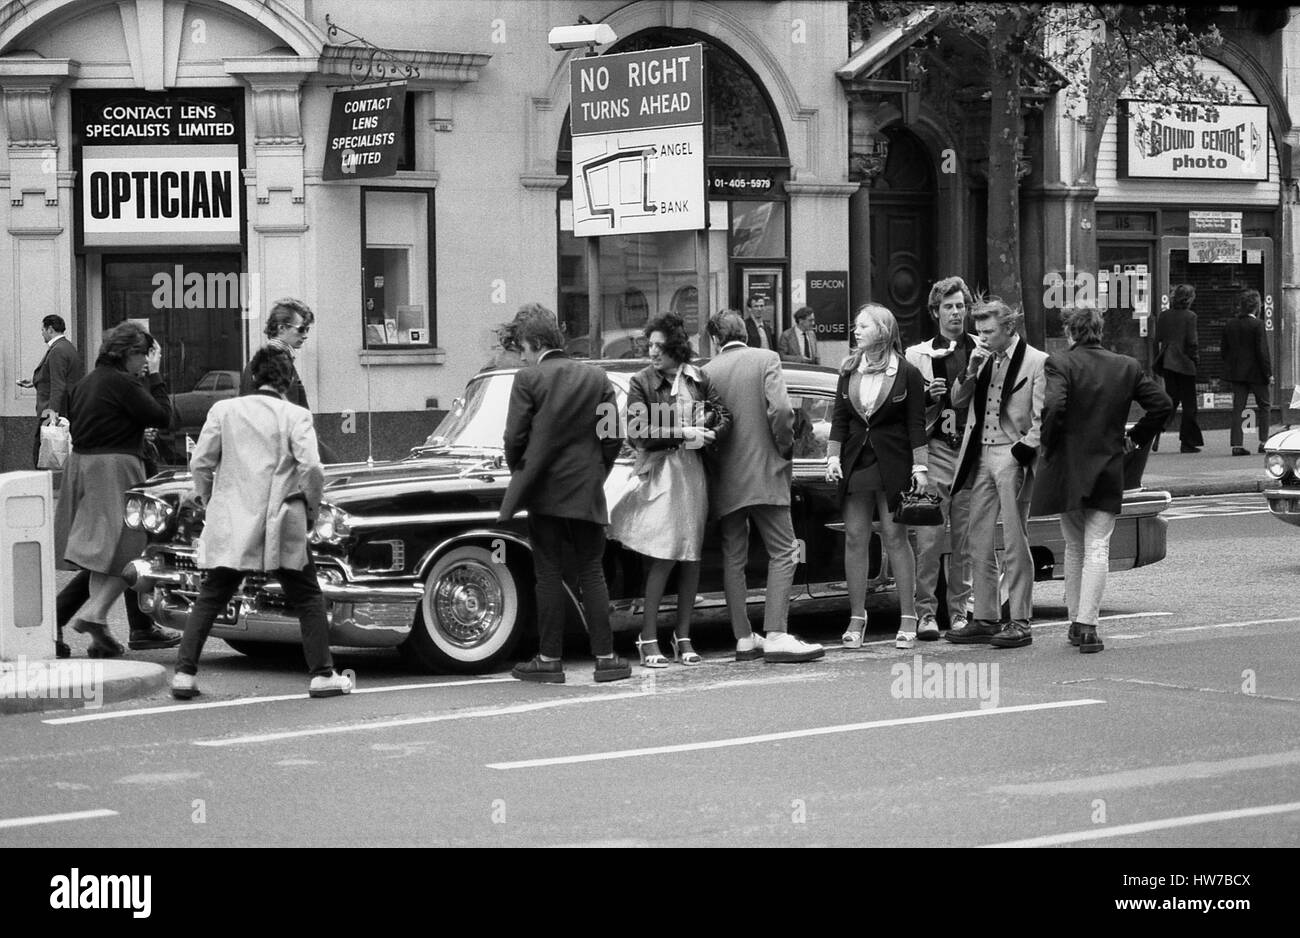 Les amateurs de musique d'admirer une voiture américaine vintage Rock and Roll durant la campagne Radio mars à Londres, Angleterre le 15 mai 1976. La campagne visant à obtenir plus d'vintage rock and roll la musique diffusée sur BBC Radio. Banque D'Images